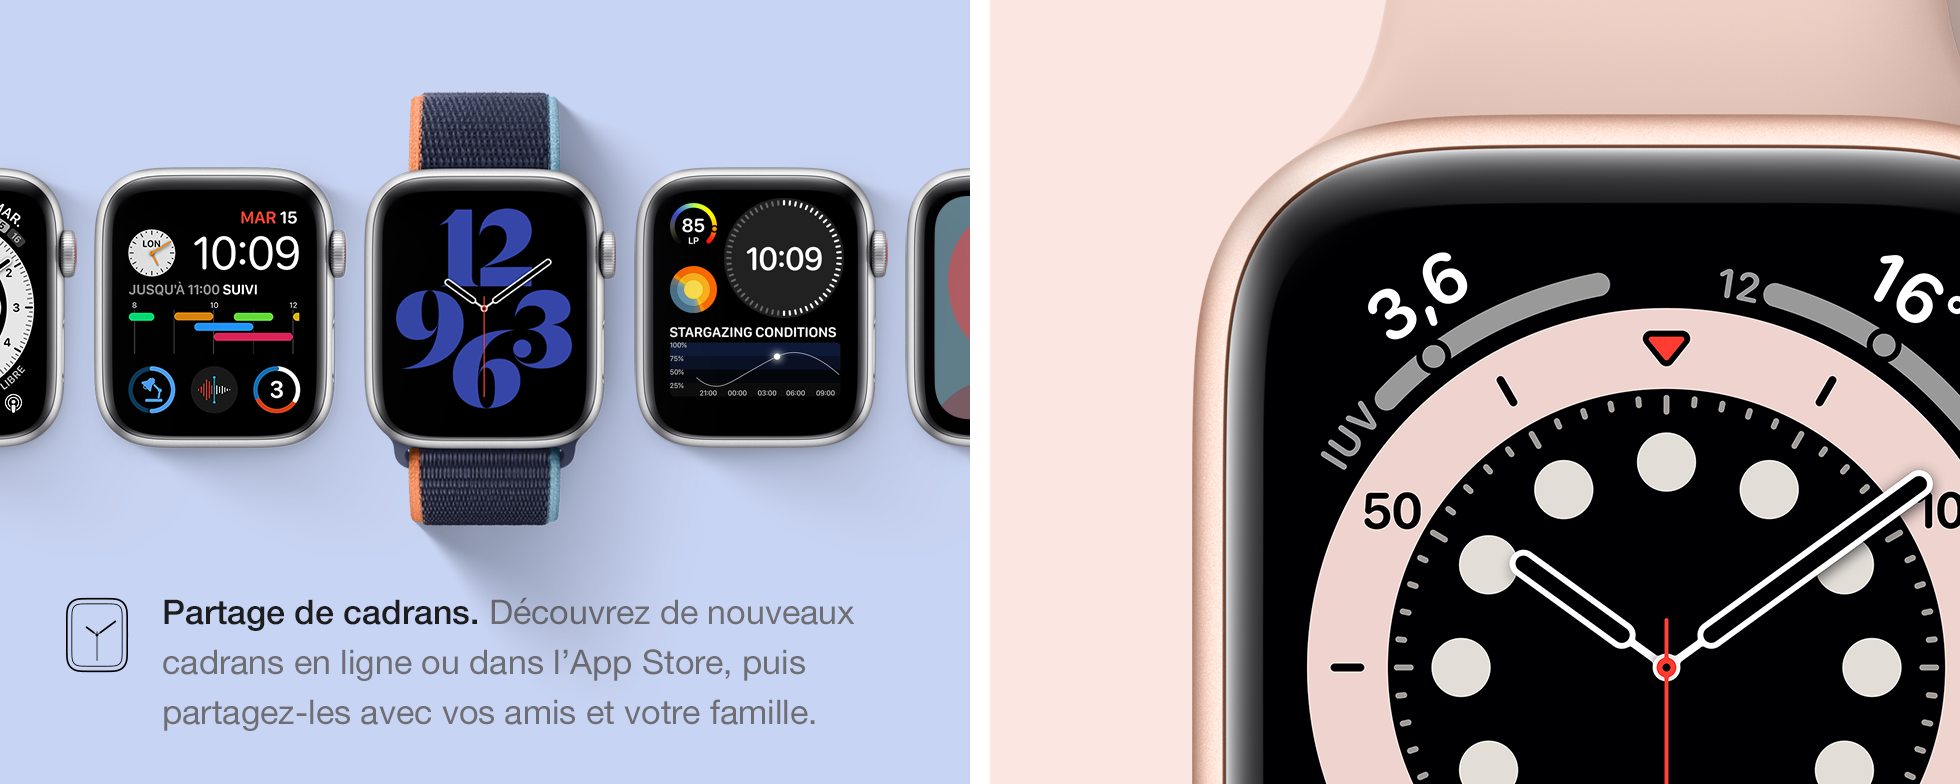 Personnalisez votre Apple Watch SE et profitez de son magnifique écran Retina.